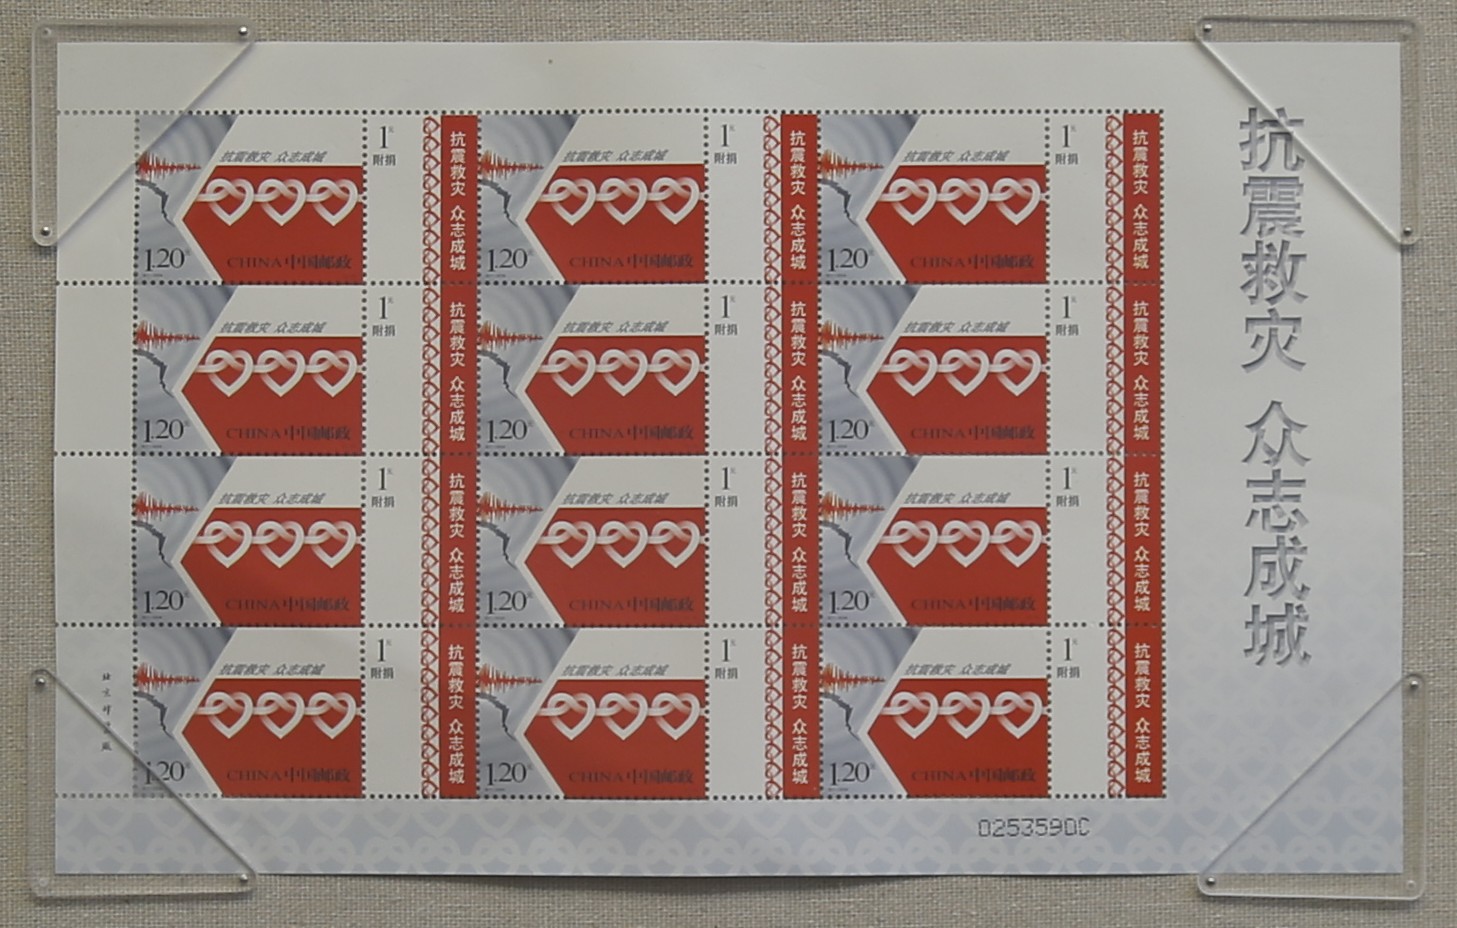 汶川地震“抗震救灾 众志成城”1.2元纪念邮票